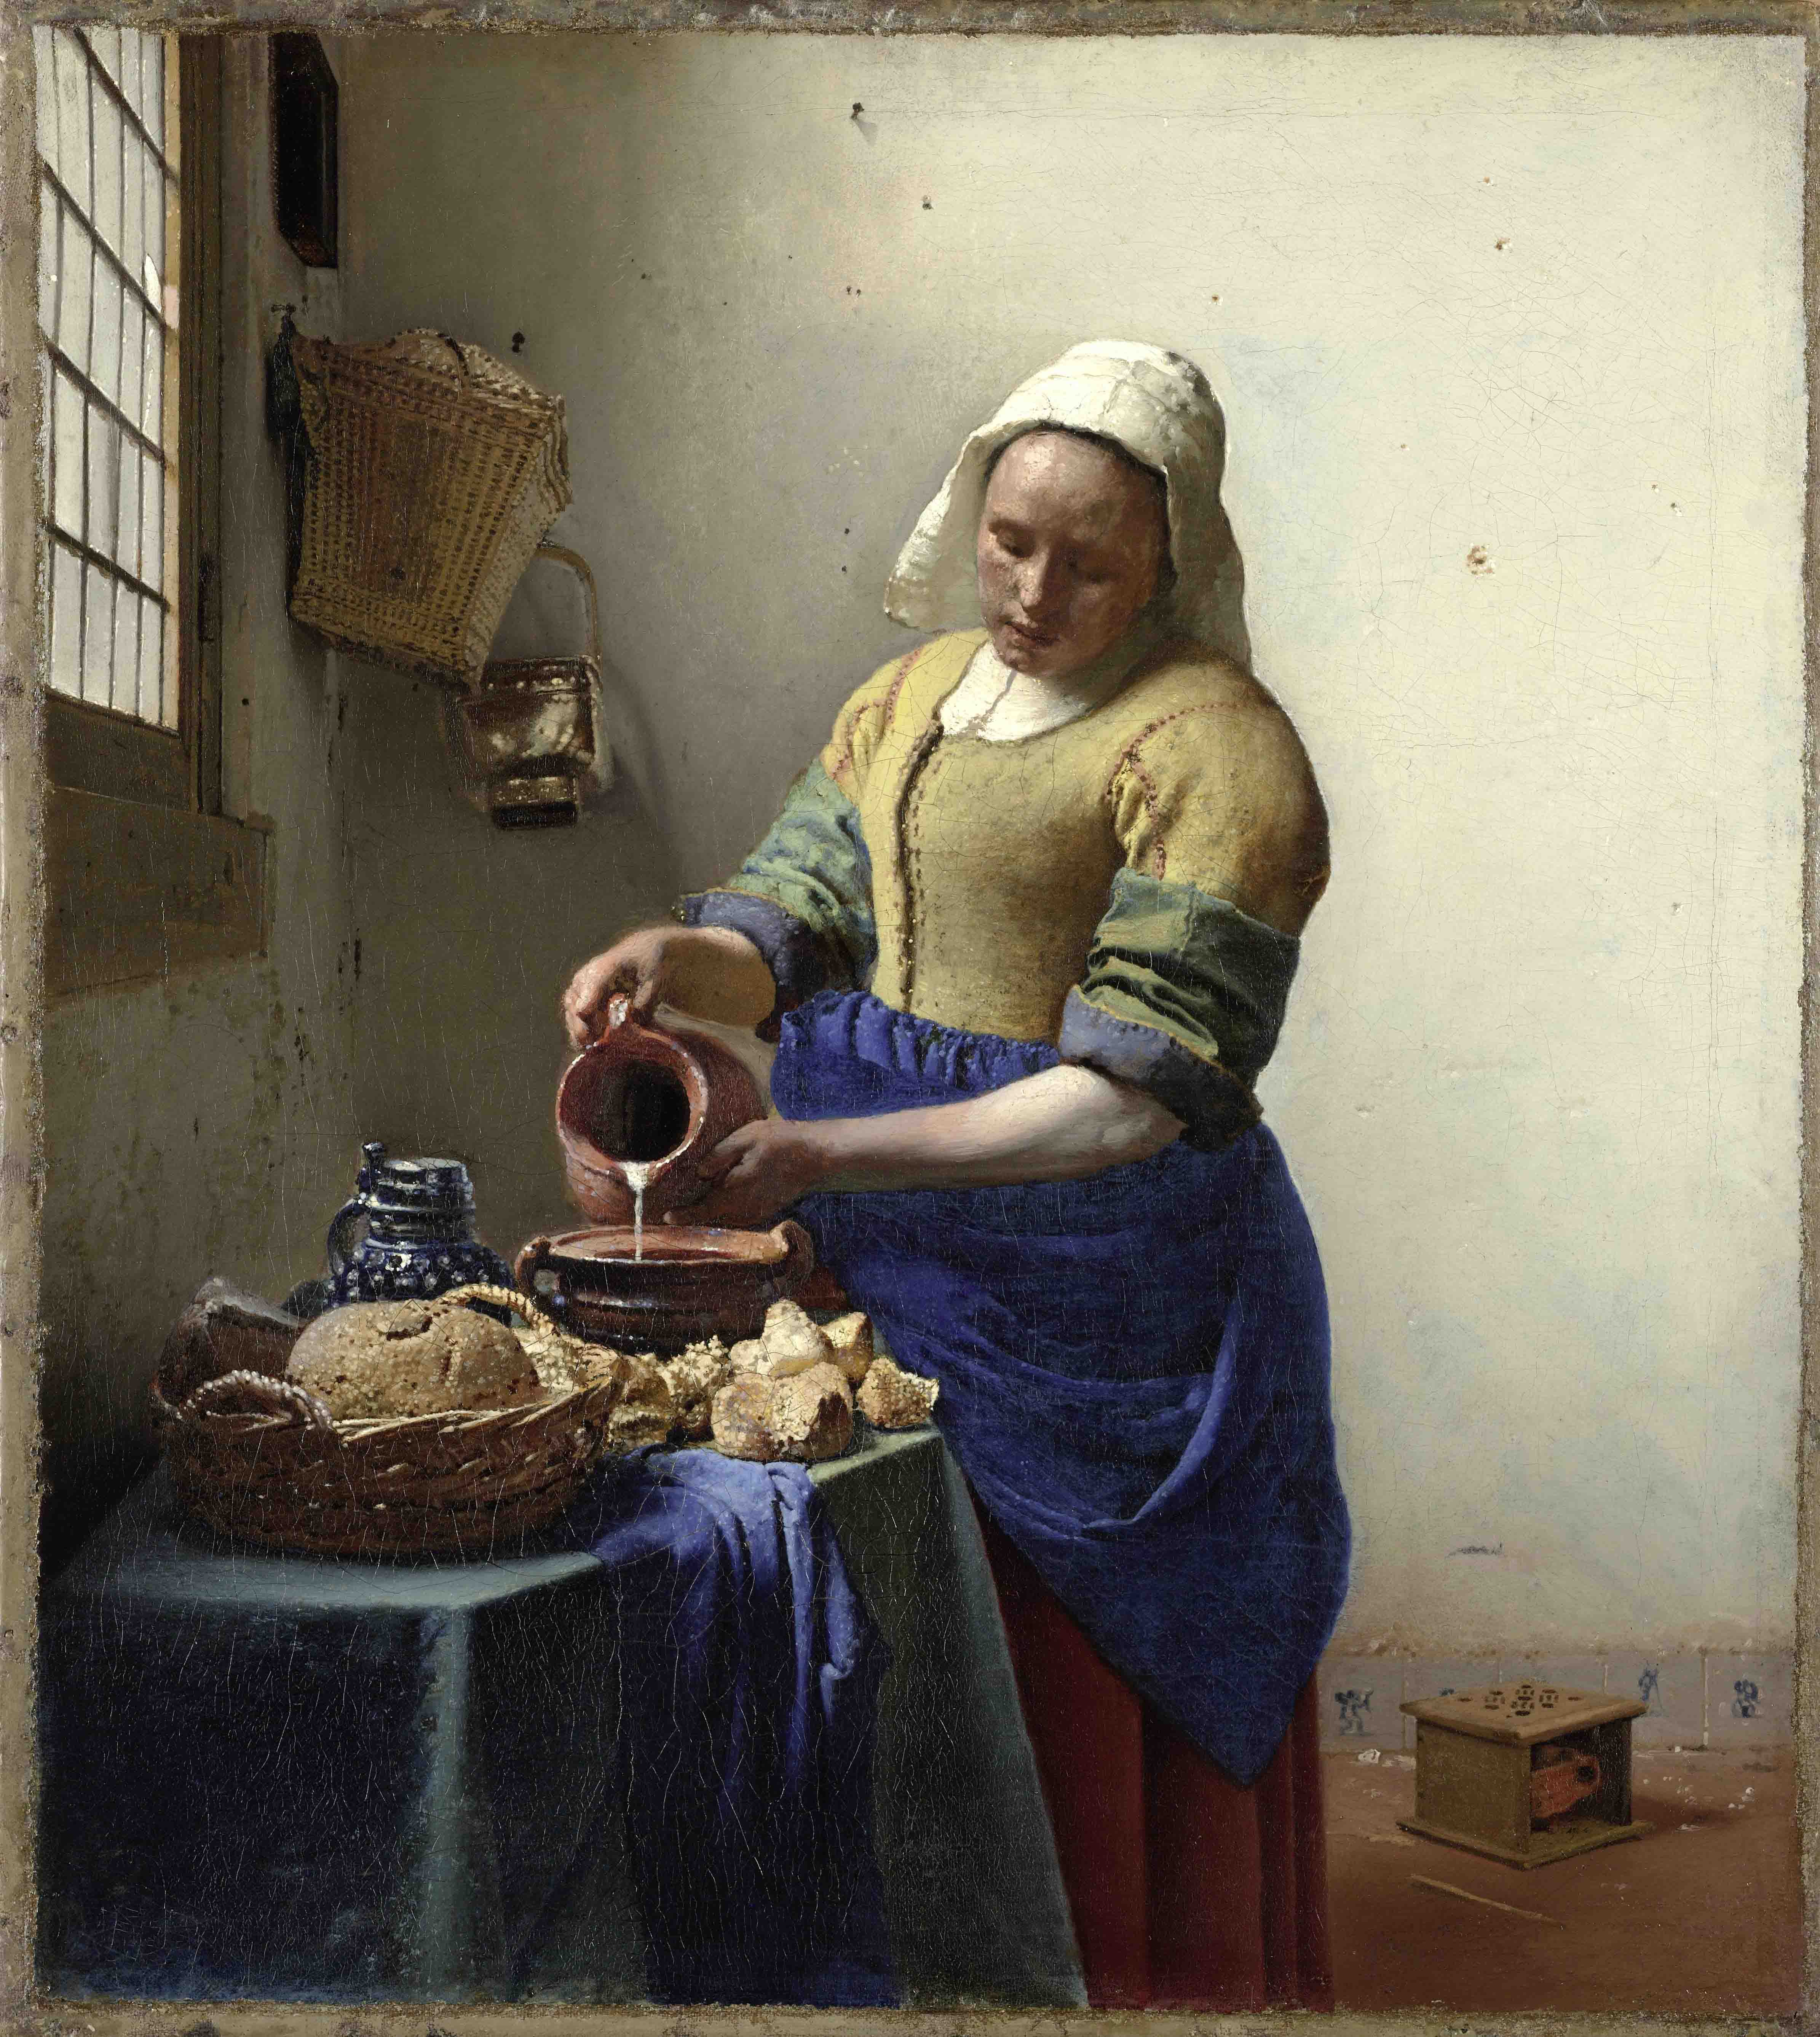  Vermeer_The Milkmaid_reduced.jpg